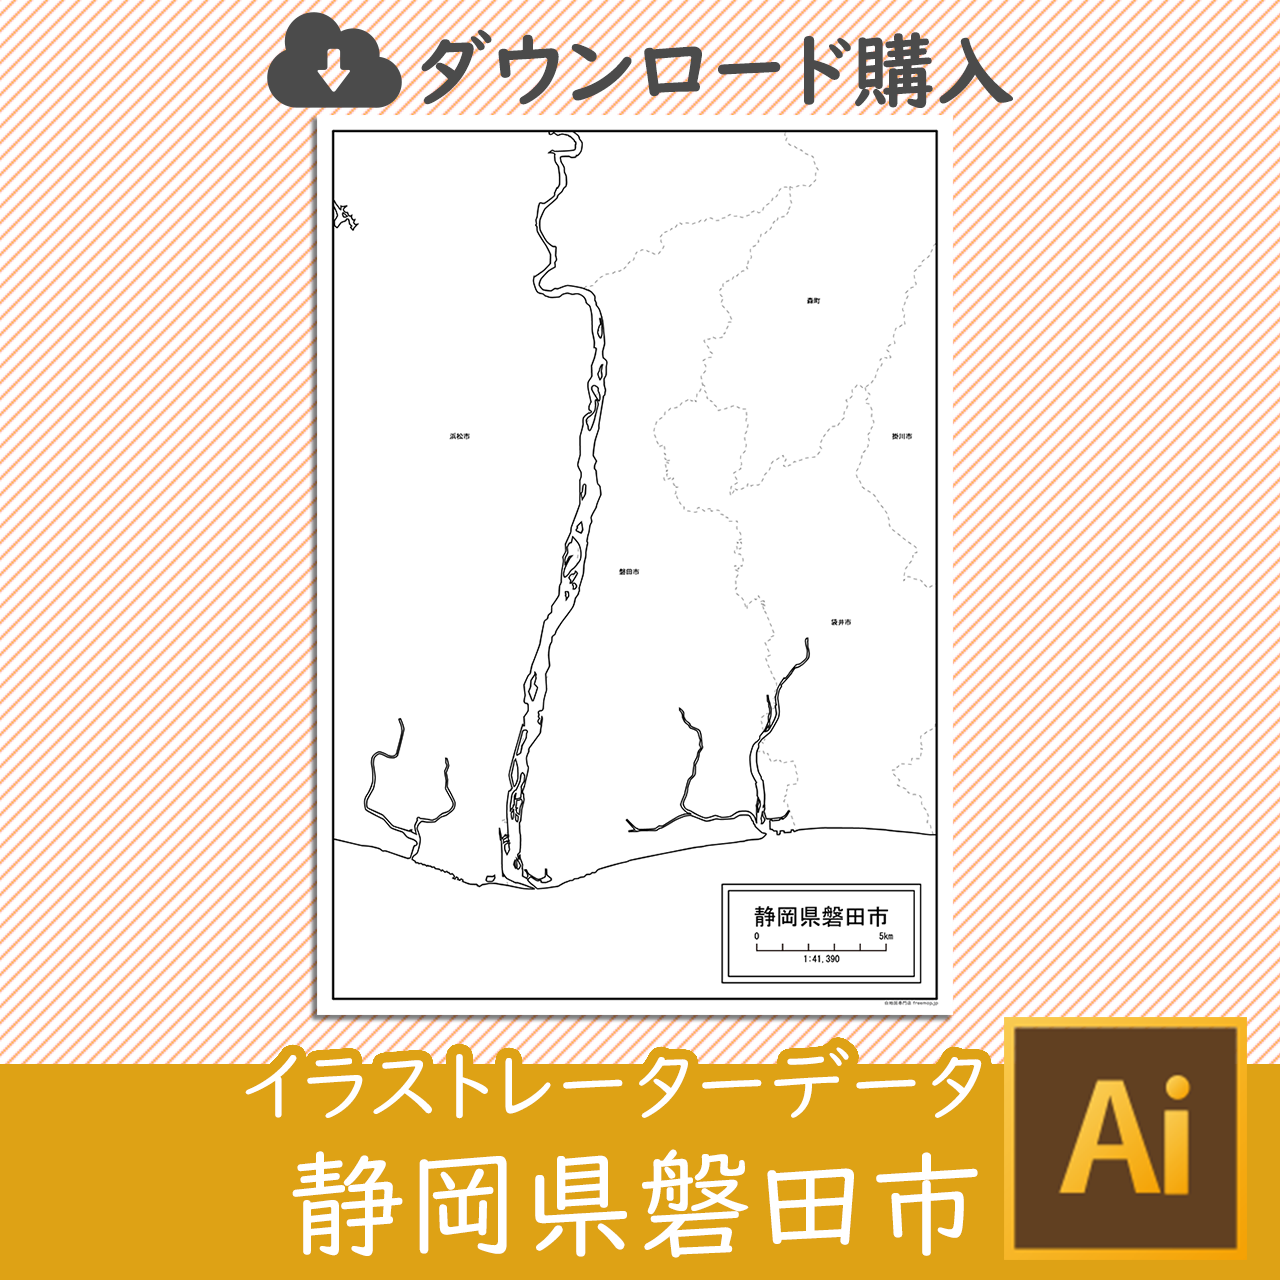 磐田市のaiデータのサムネイル画像